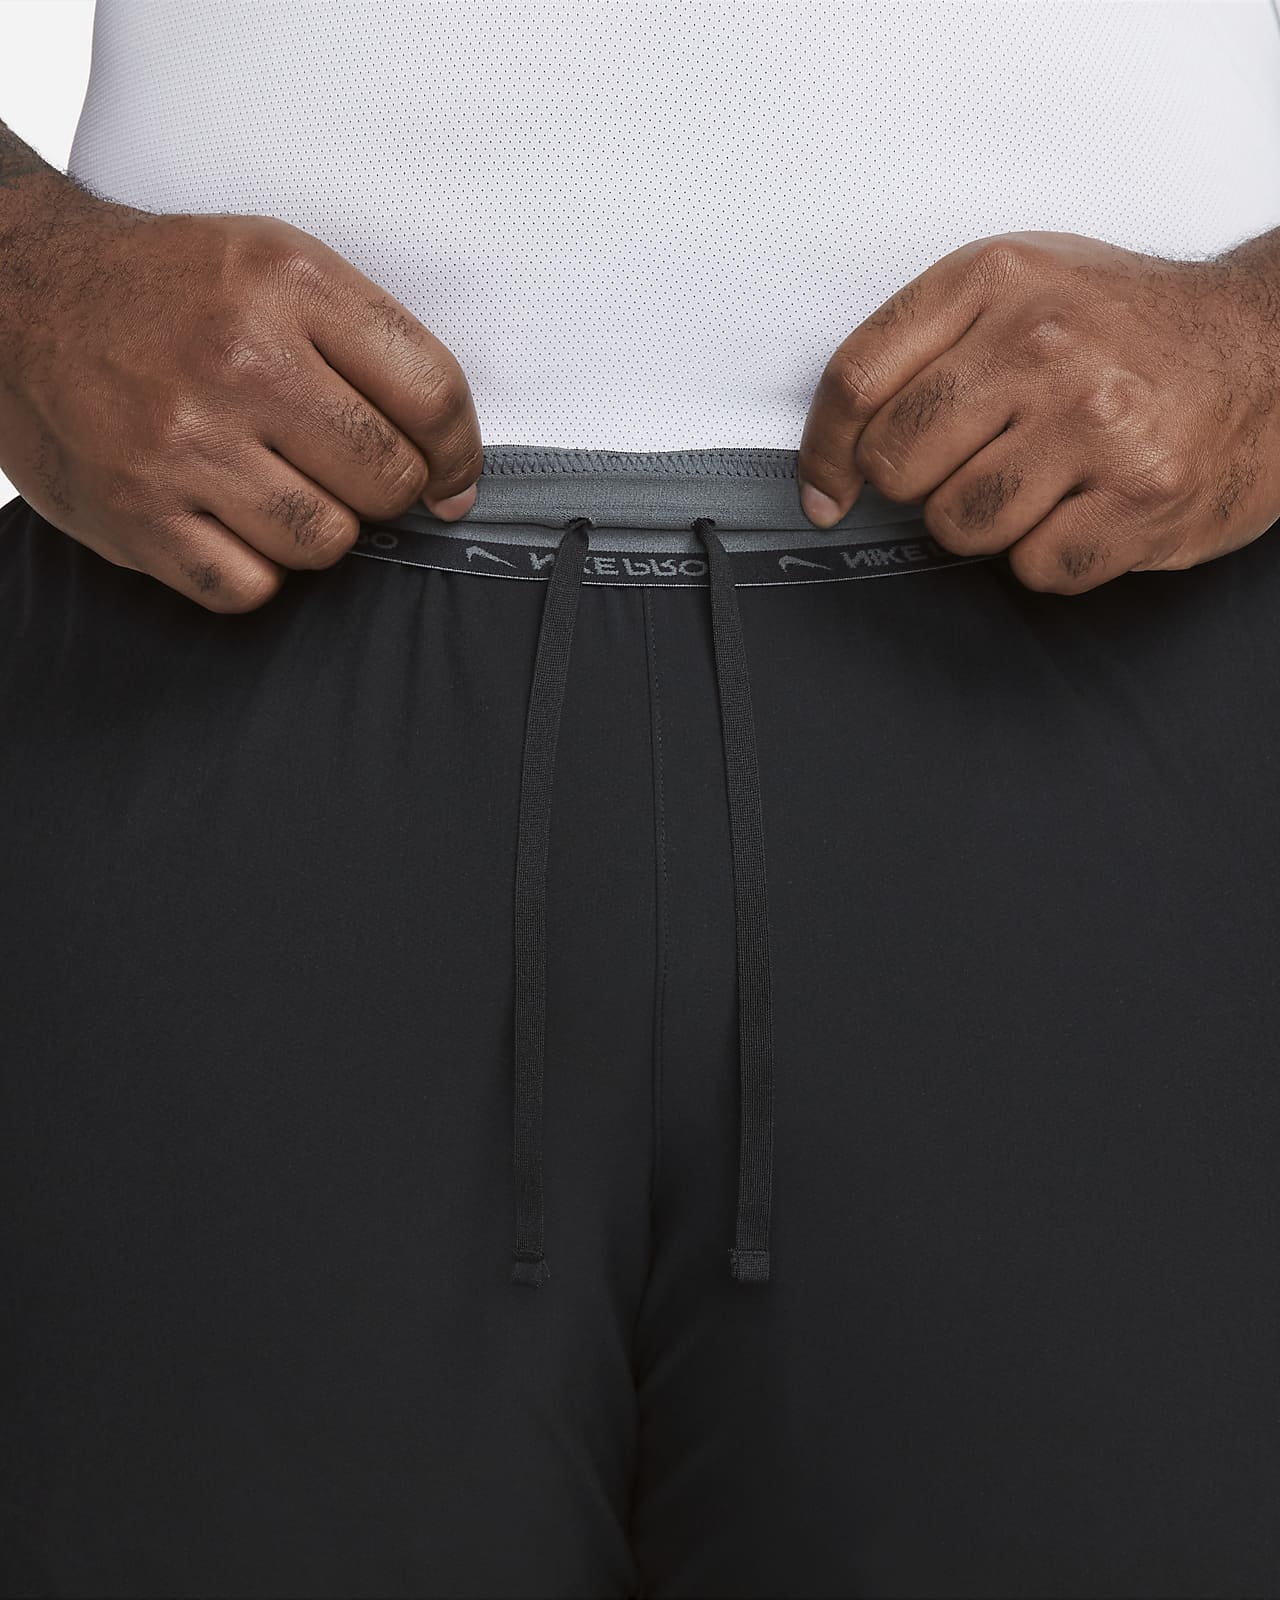 Nike Pro Dri-FIT Men's Long Shorts, S, Iron Grey/Black/Black at